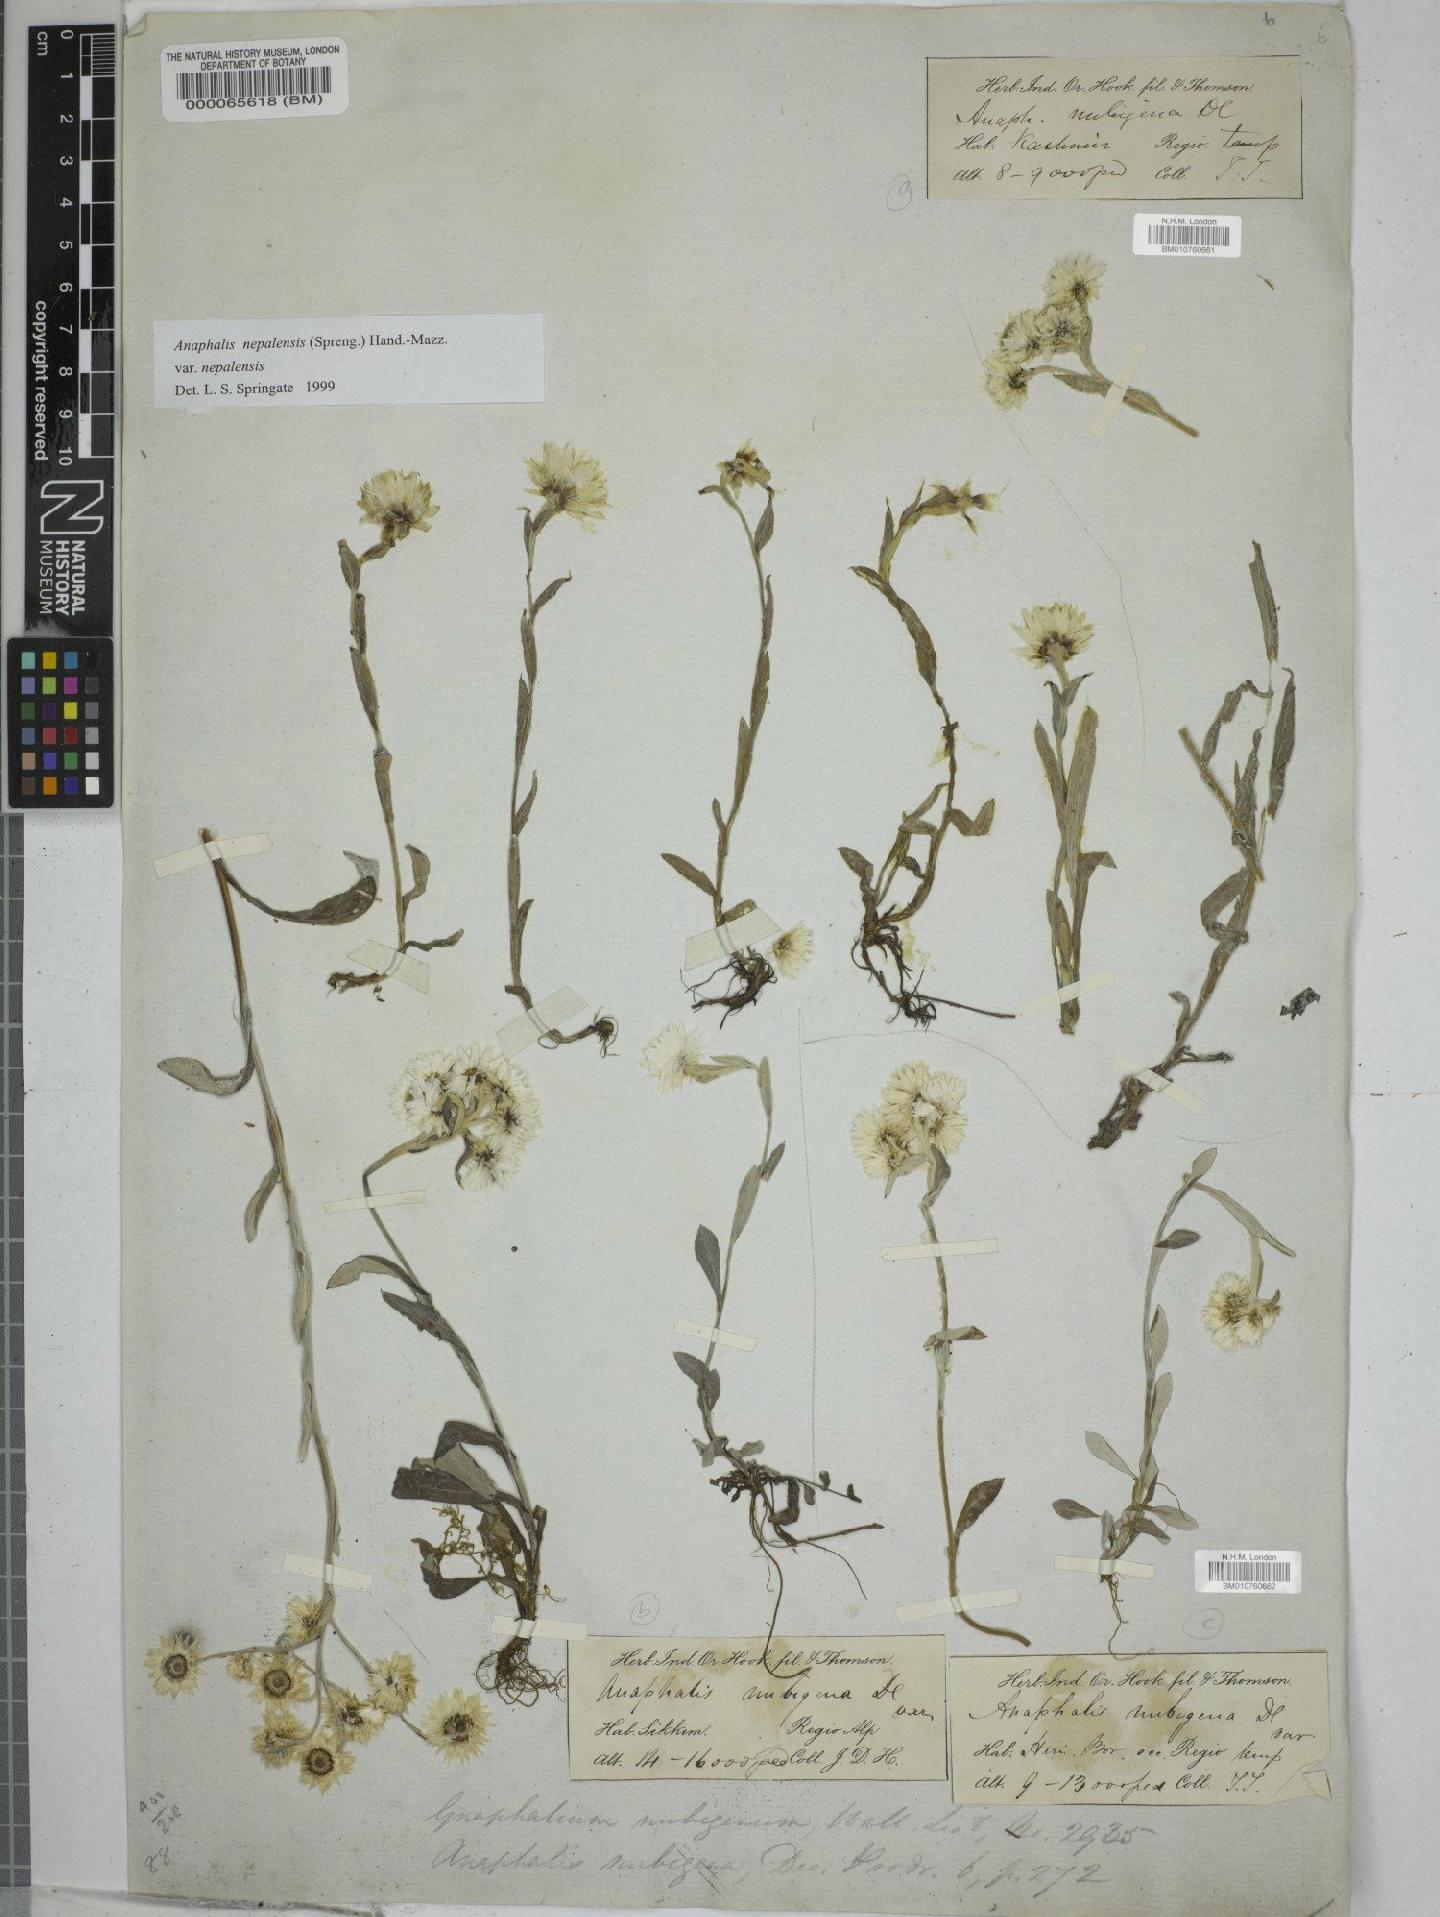 To NHMUK collection (Anaphalis pterocaulon (Franch. & Sav.) Maxim.; NHMUK:ecatalogue:9151667)